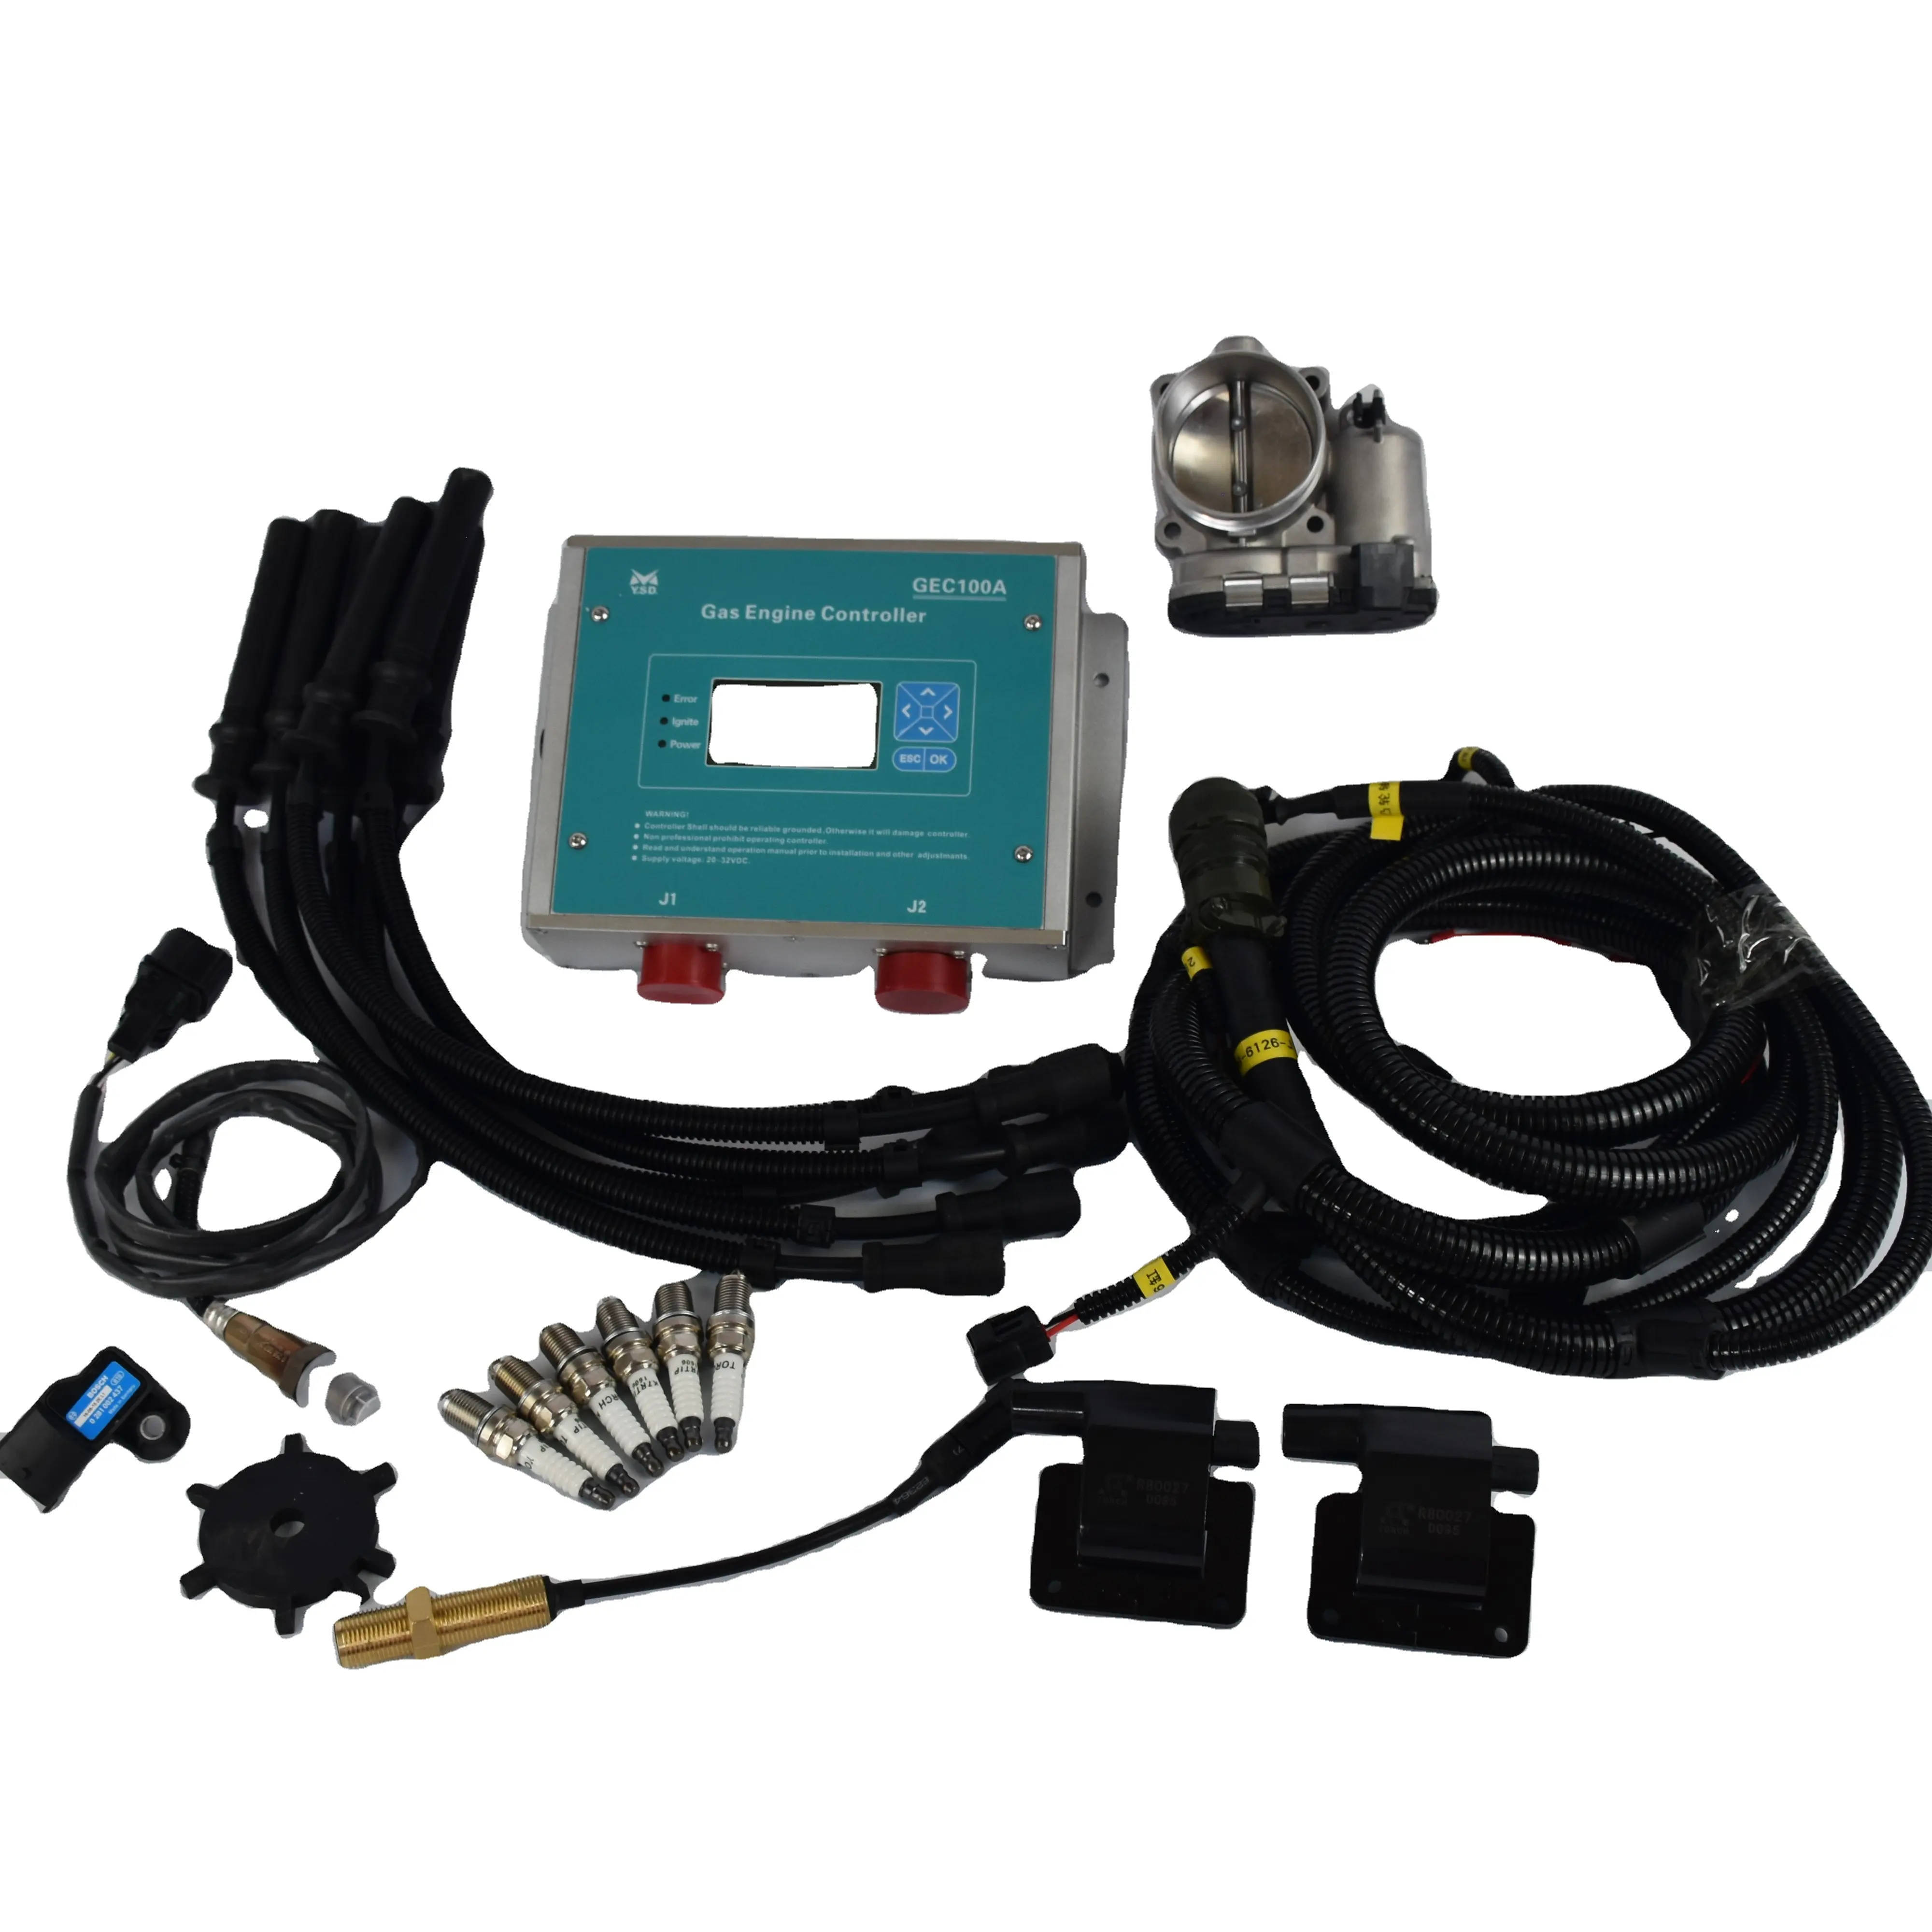 Controlador de ignição para gerador a gás natural Motortech MIC3 MIC4 Altronic NGI-1000 Heinzmann controle digital woodward GEC100